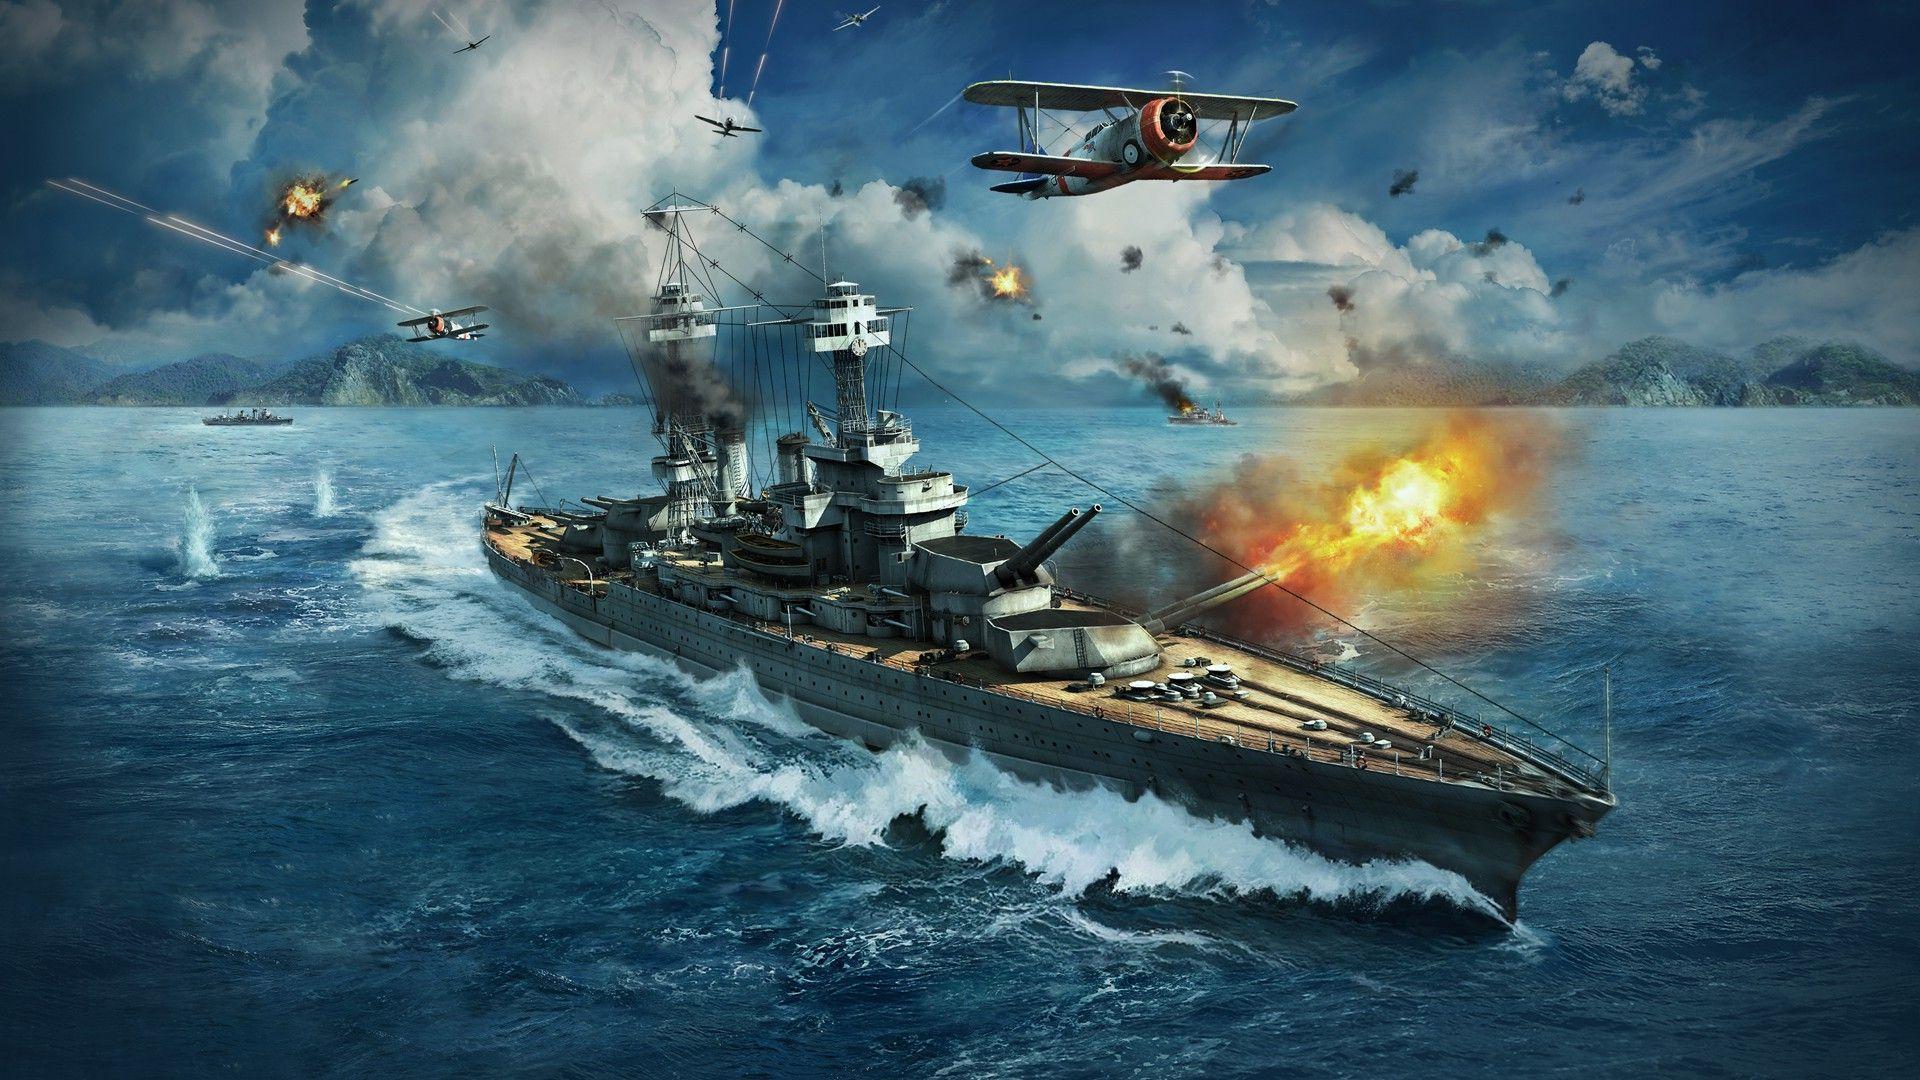 Video Game World Of Warships Wallpaper. Gamer. Warship games